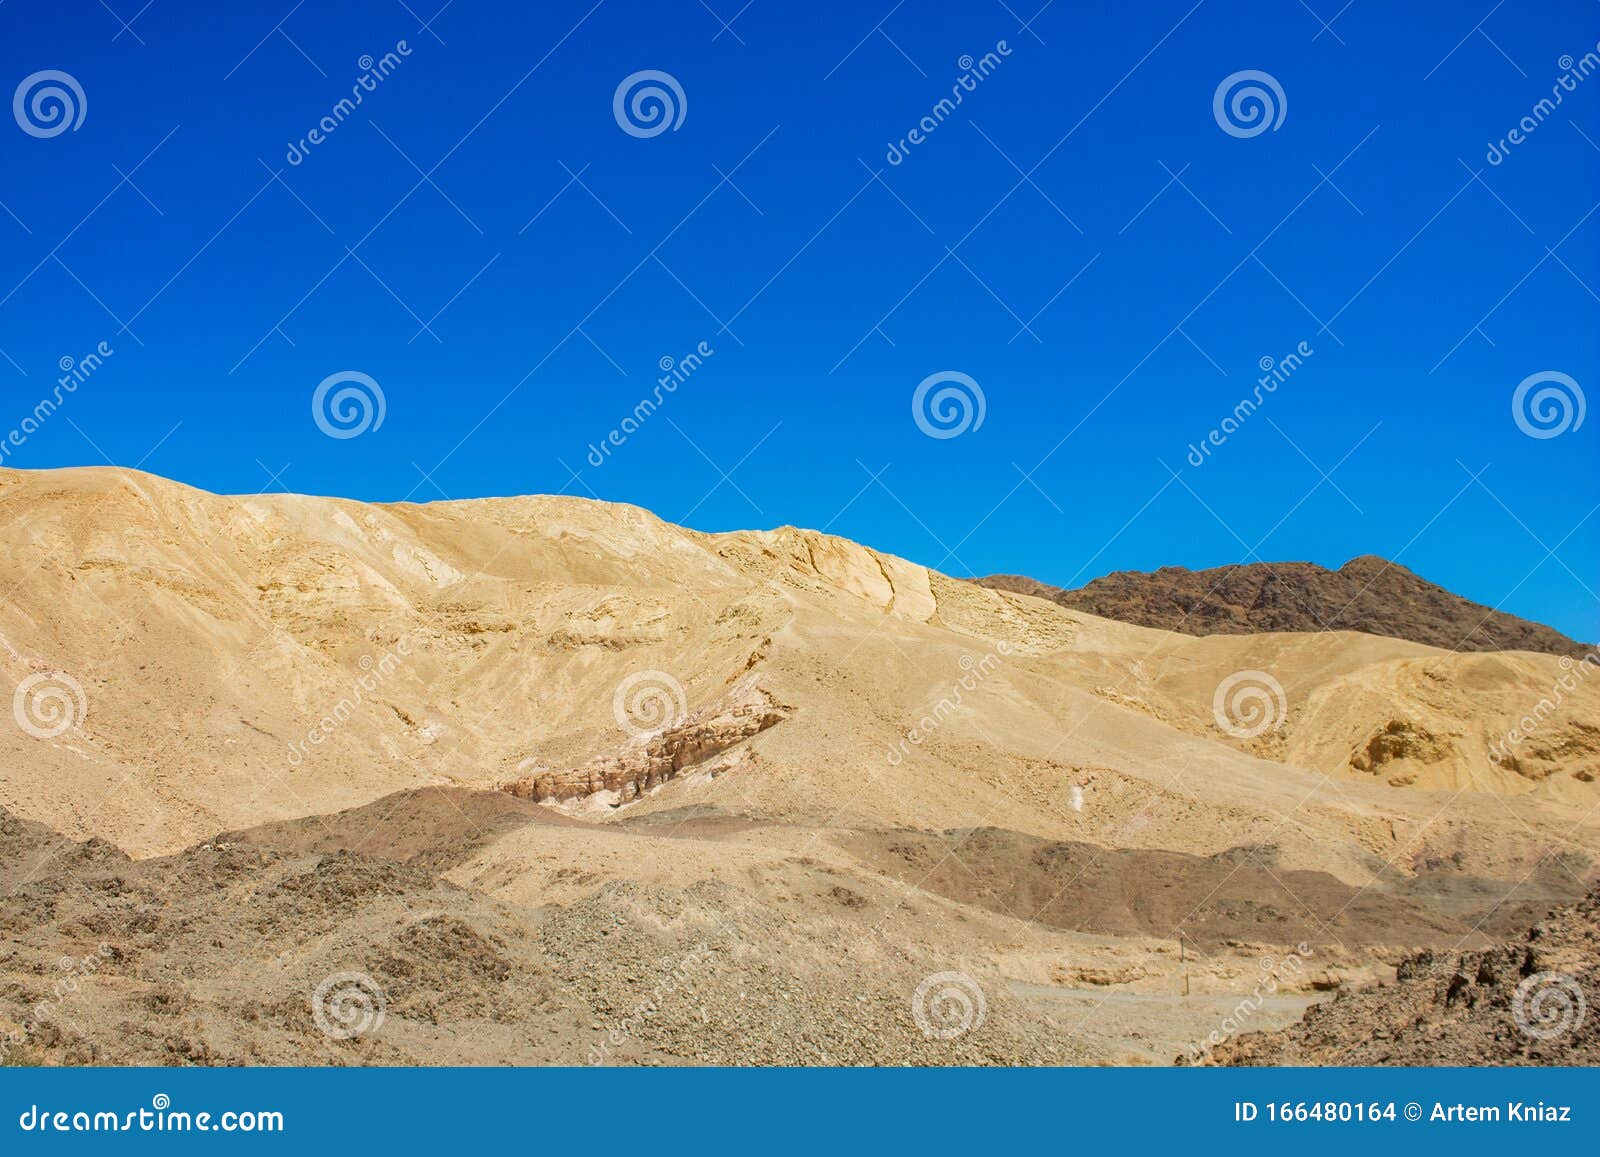 内盖夫以色列沙漠砂石山干旱荒野景观环境与地平线岩景背景库存照片 图片包括有天空 背包